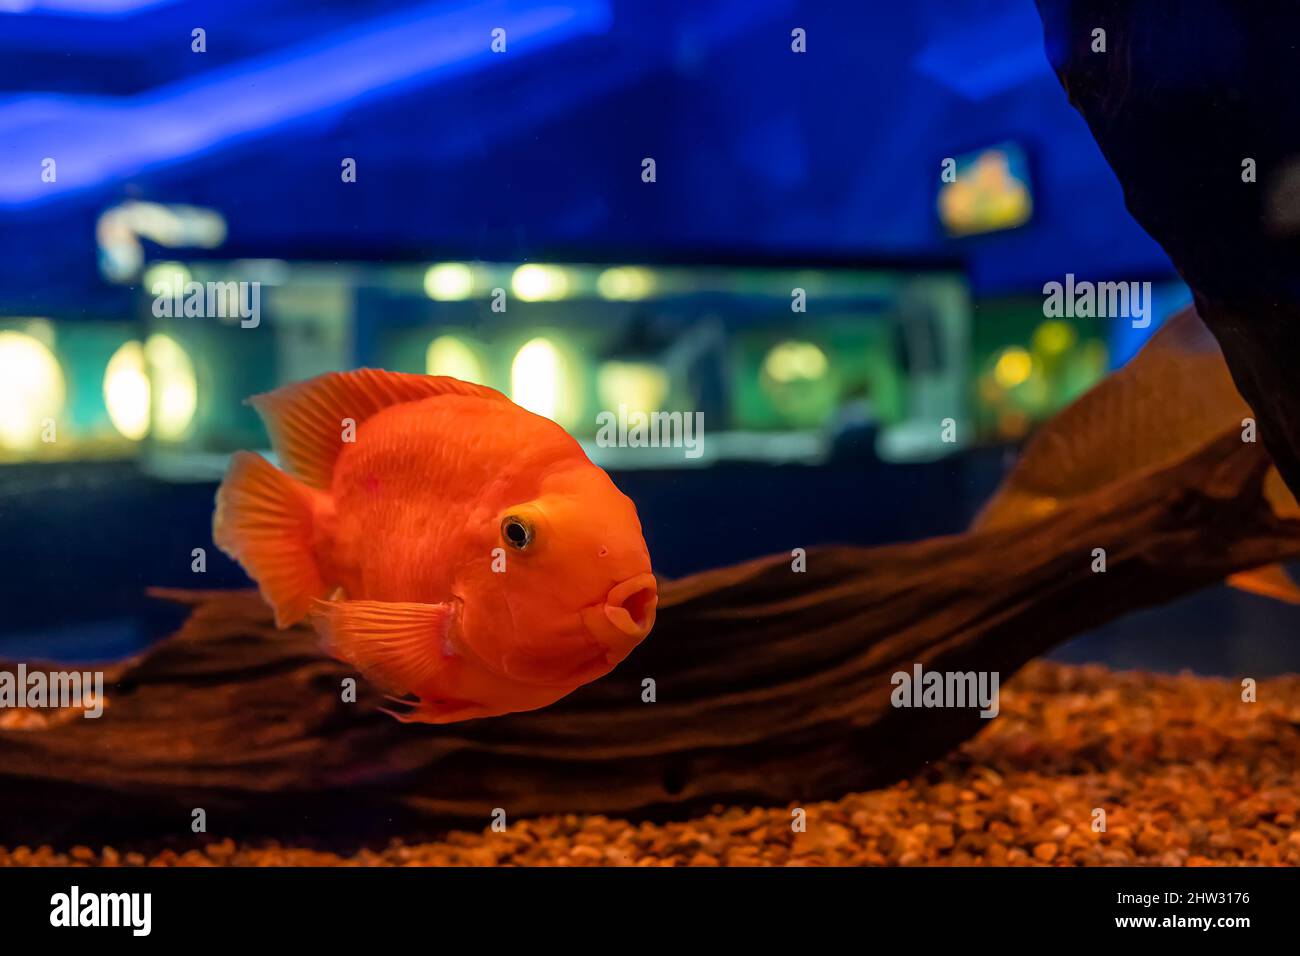 red parrot fish swim in a transparent aquarium Stock Photo